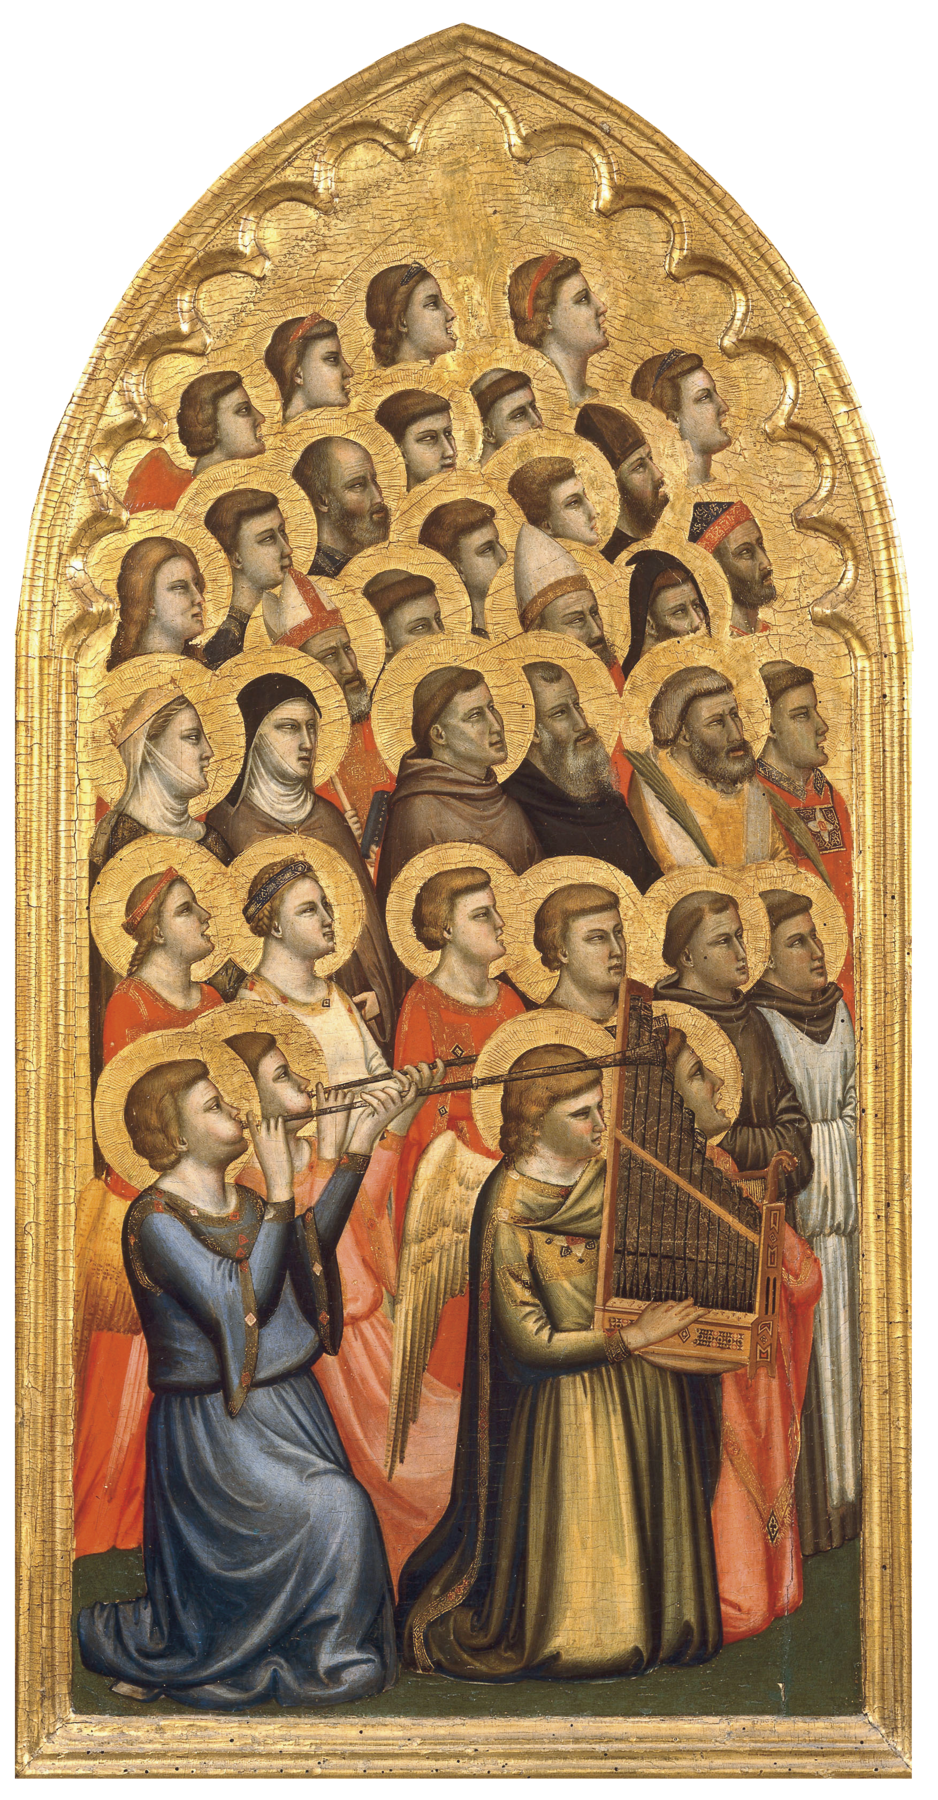 Pintura. Representação de um conjunto de seres com aspecto angelical, vestindo túnicas, com auréolas douradas ao redor de suas cabeças. À frente, um segura uma harpa, e outros dois tocam clarinetes.